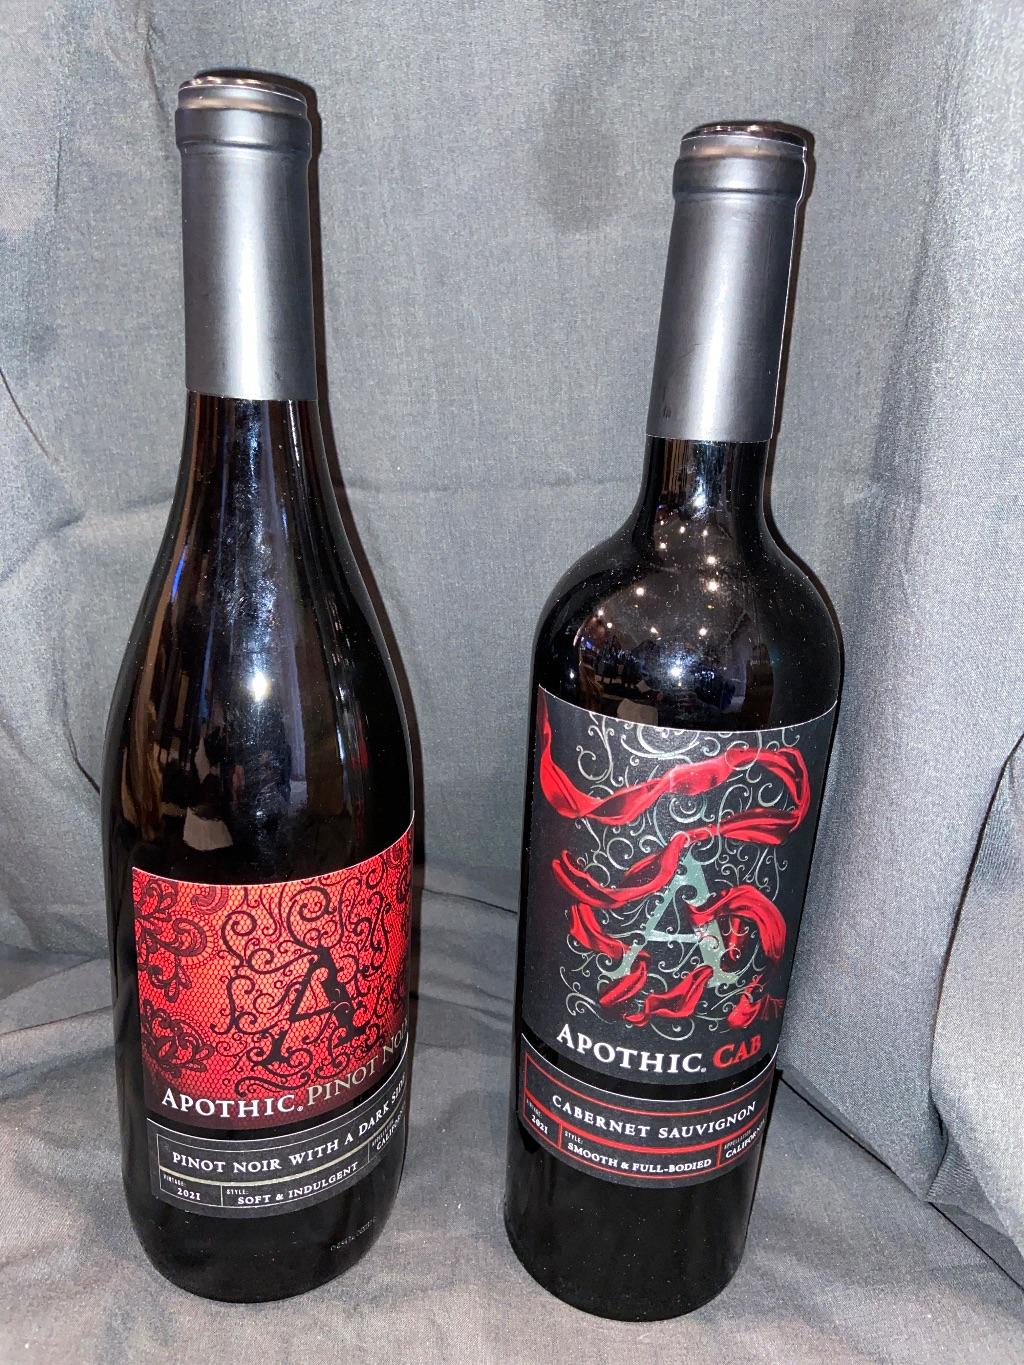 2 Bottles of Apothic Wines & Arboreal Inn $50 GC